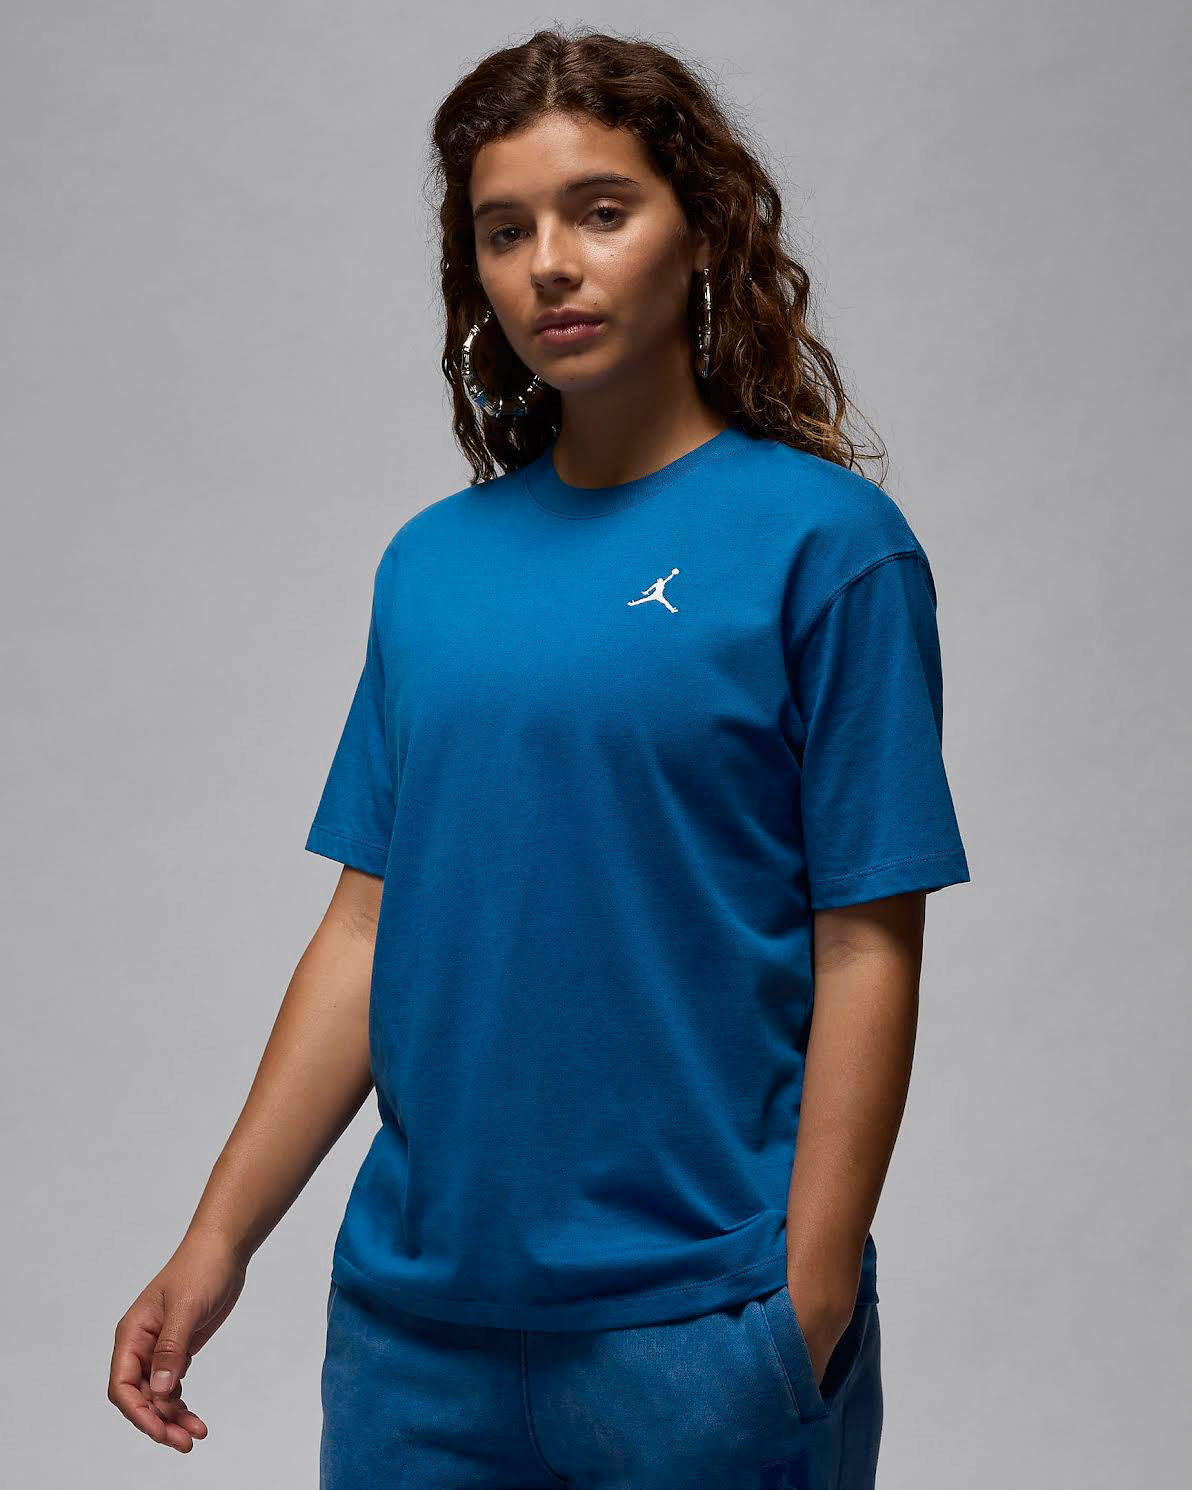 Jordan-Womens-Essentials-Shirt-Industrial-Blue